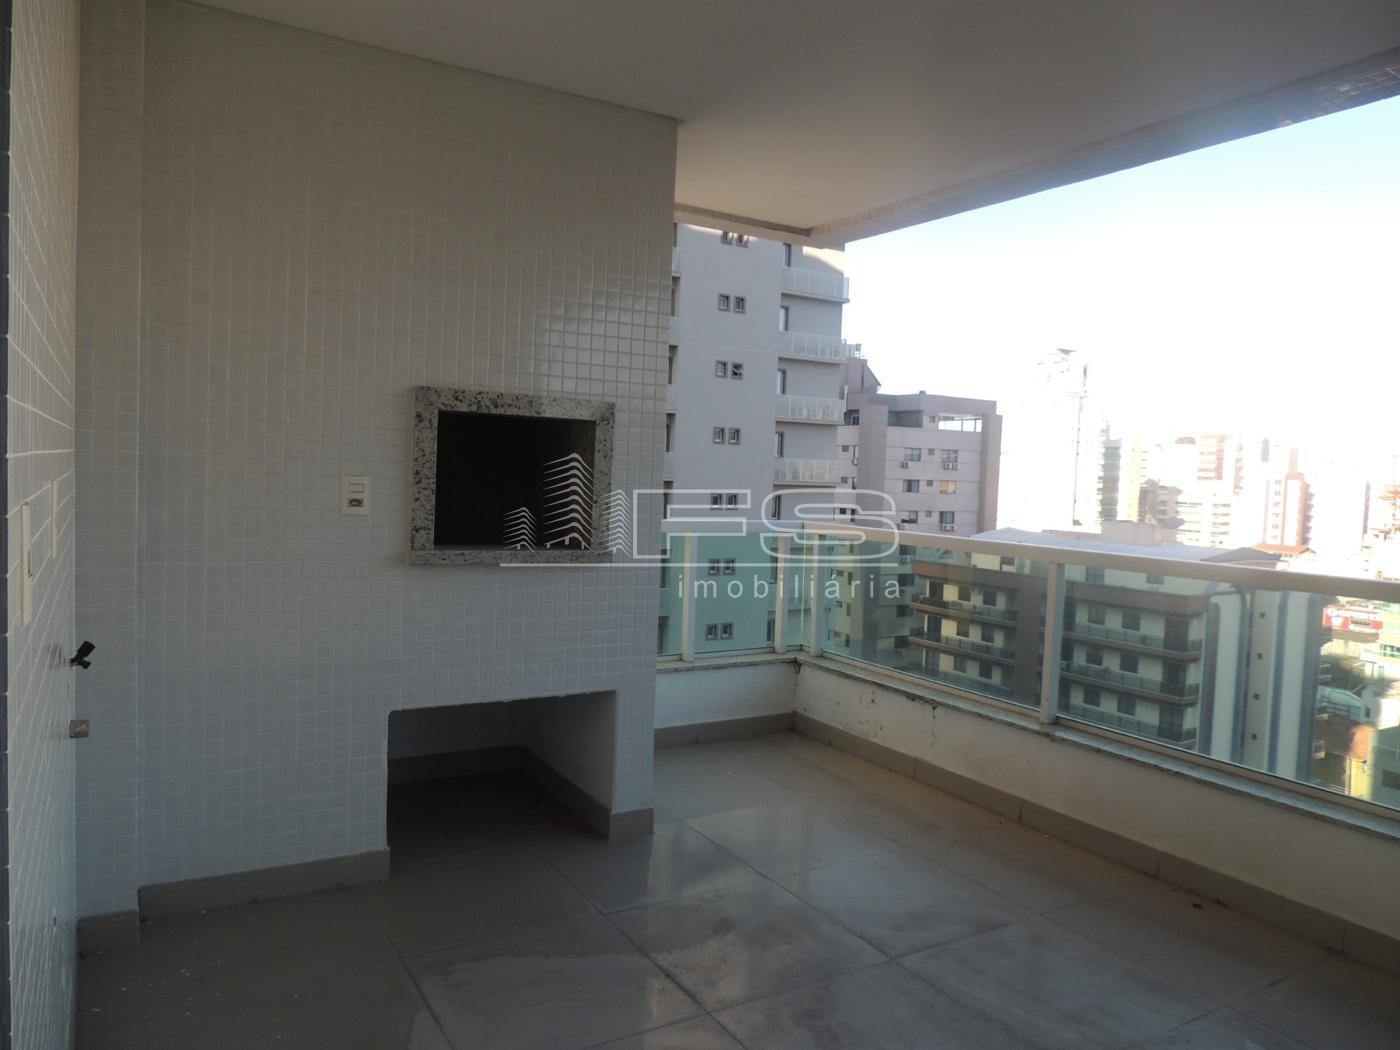 Apartamento com 4 Dormitórios à venda, 161 m² por R$ 1.340.000,00